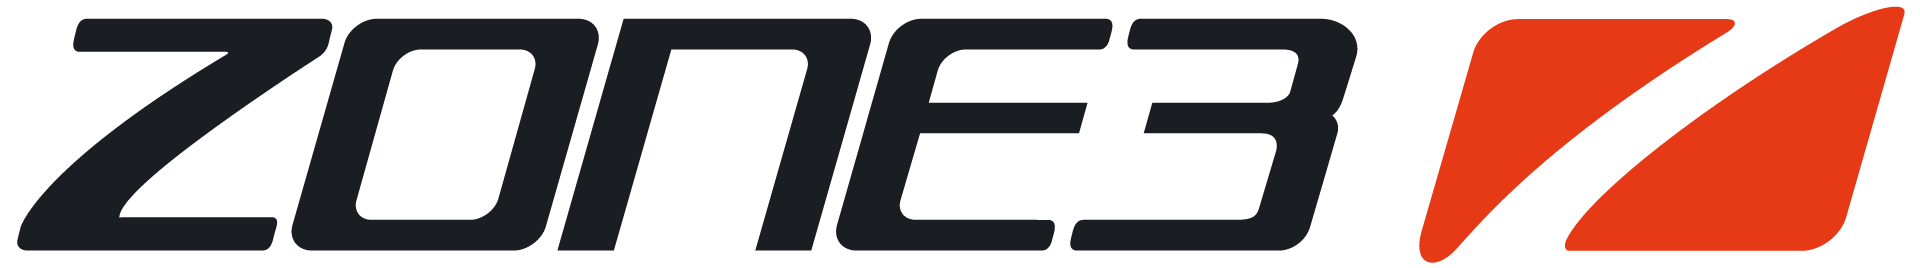 ZONE3 UK logo